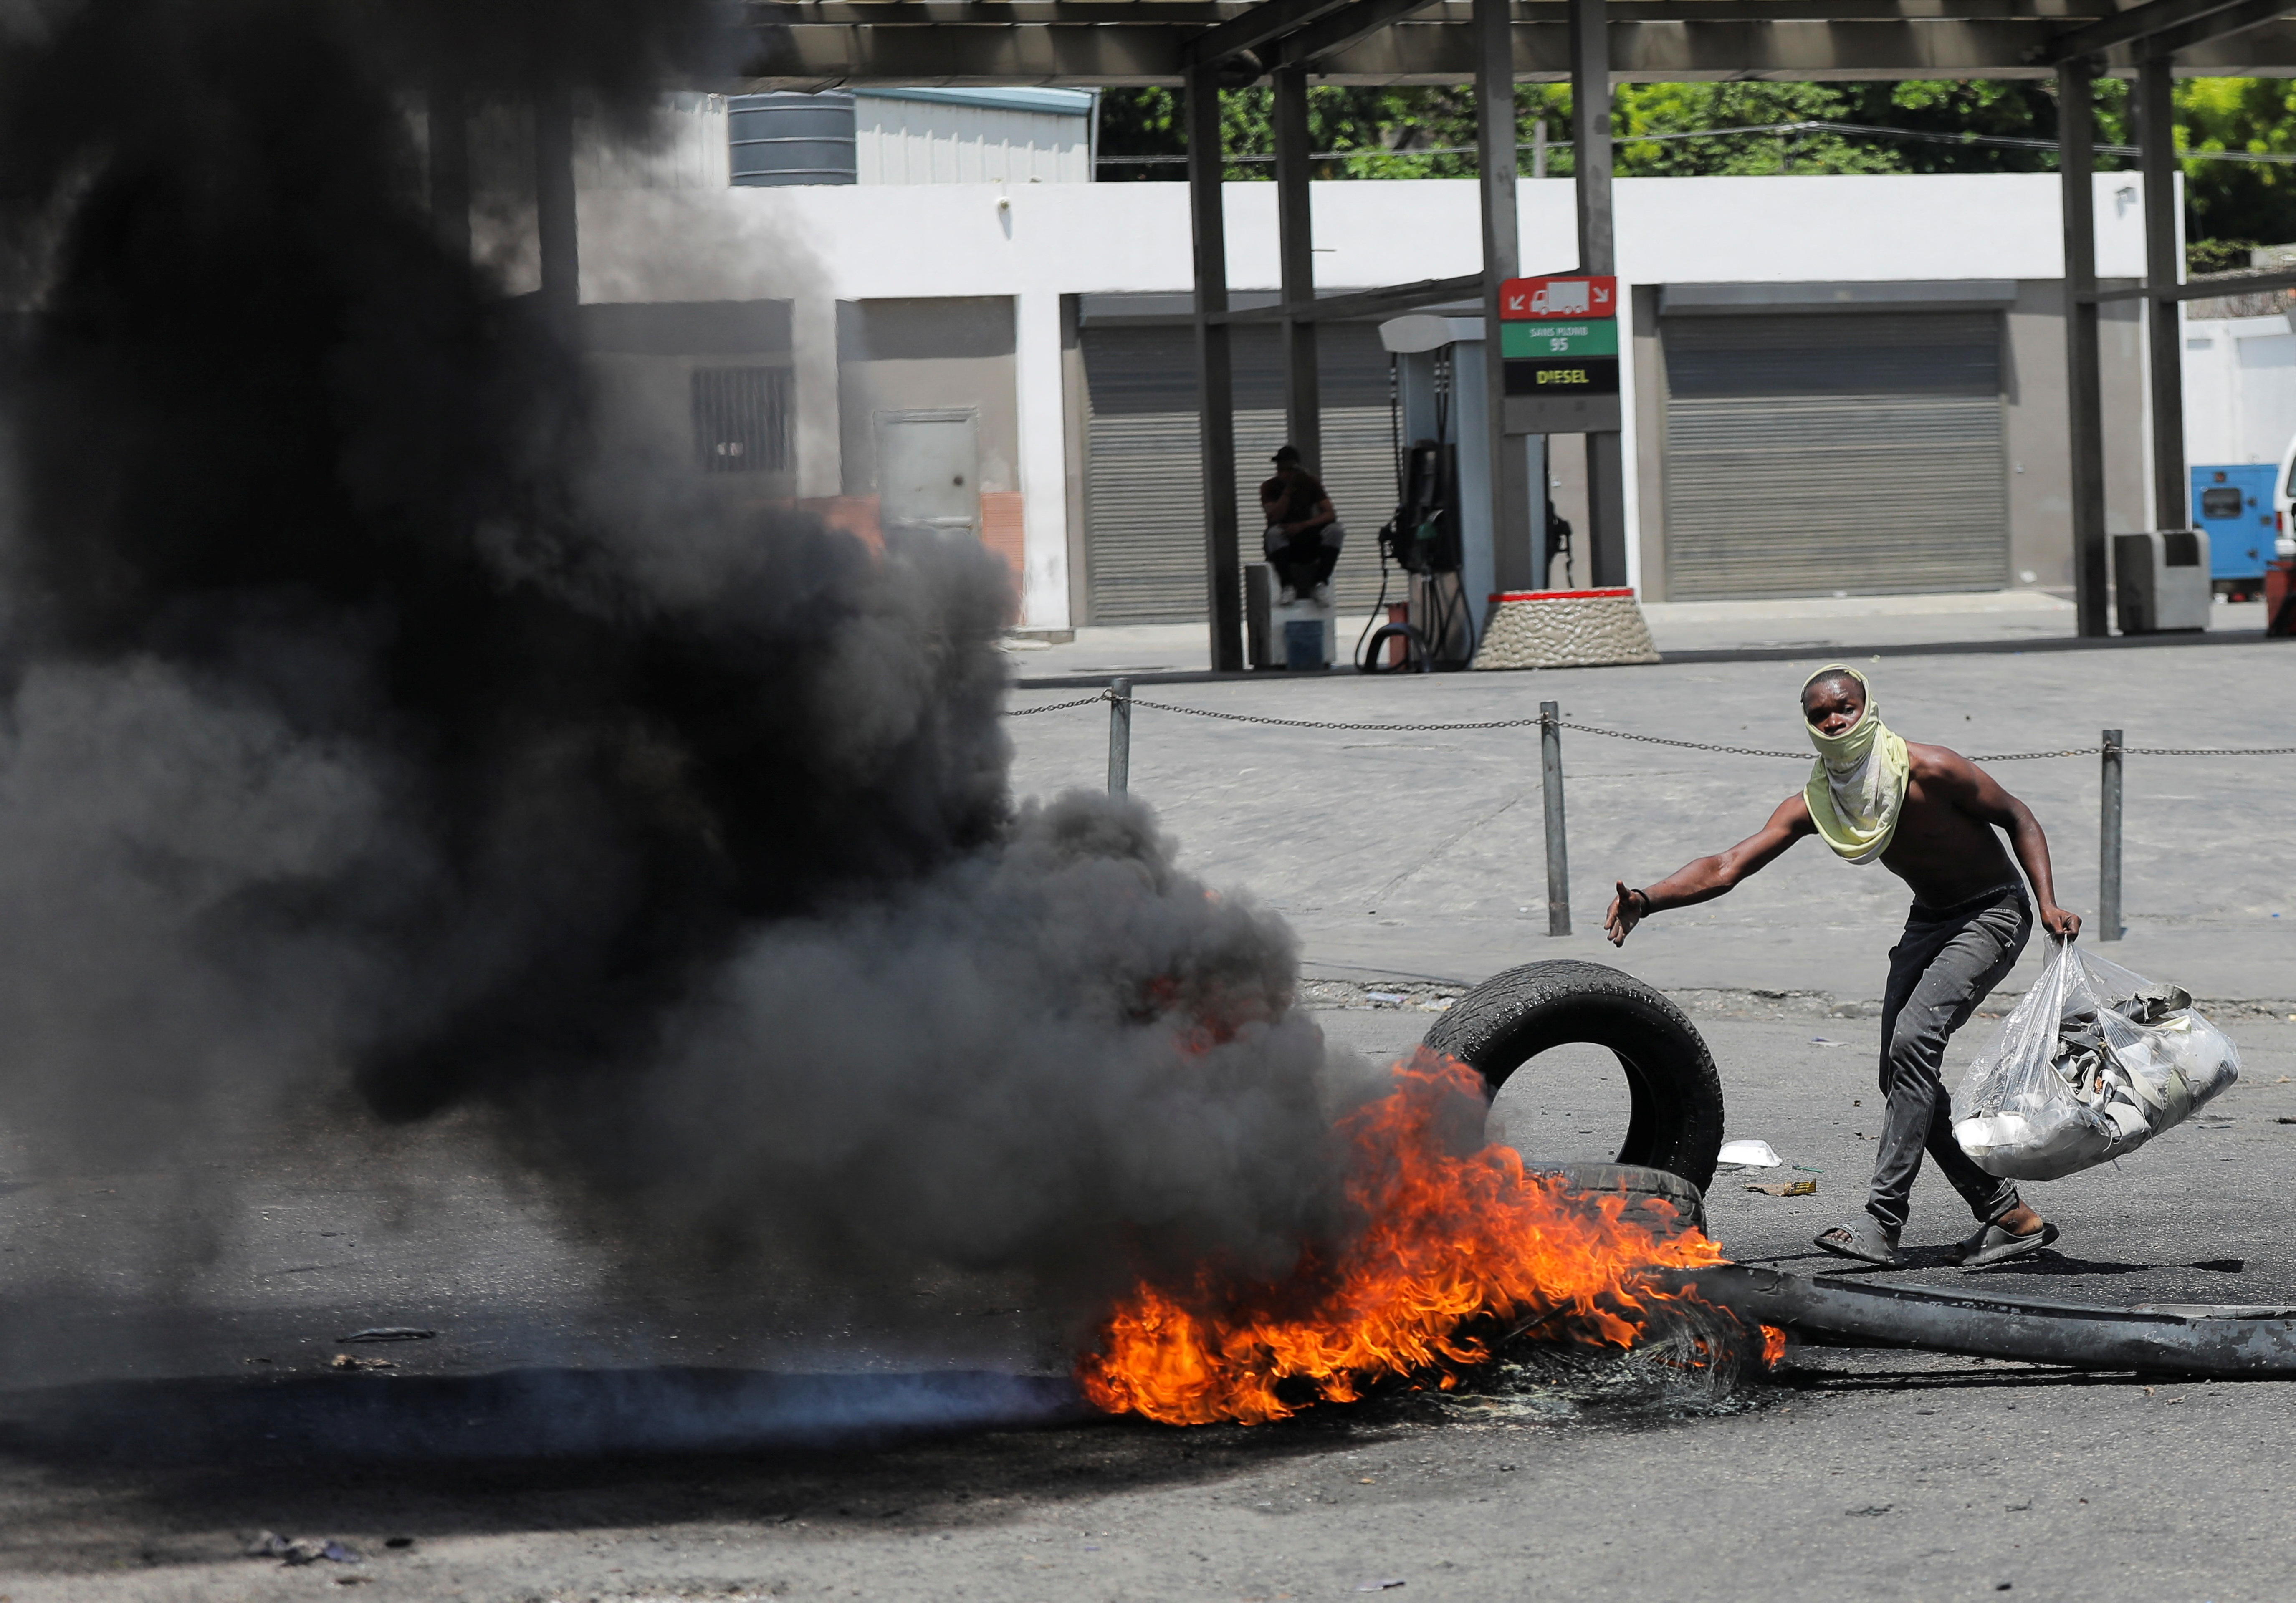 Una barricada en llamas durante las protestas por el aumento de los precios del combustible y la delincuencia, en Puerto Príncipe, Haití, el 14 de septiembre de 2022 (REUTERS/Ralph Tedy Erol)